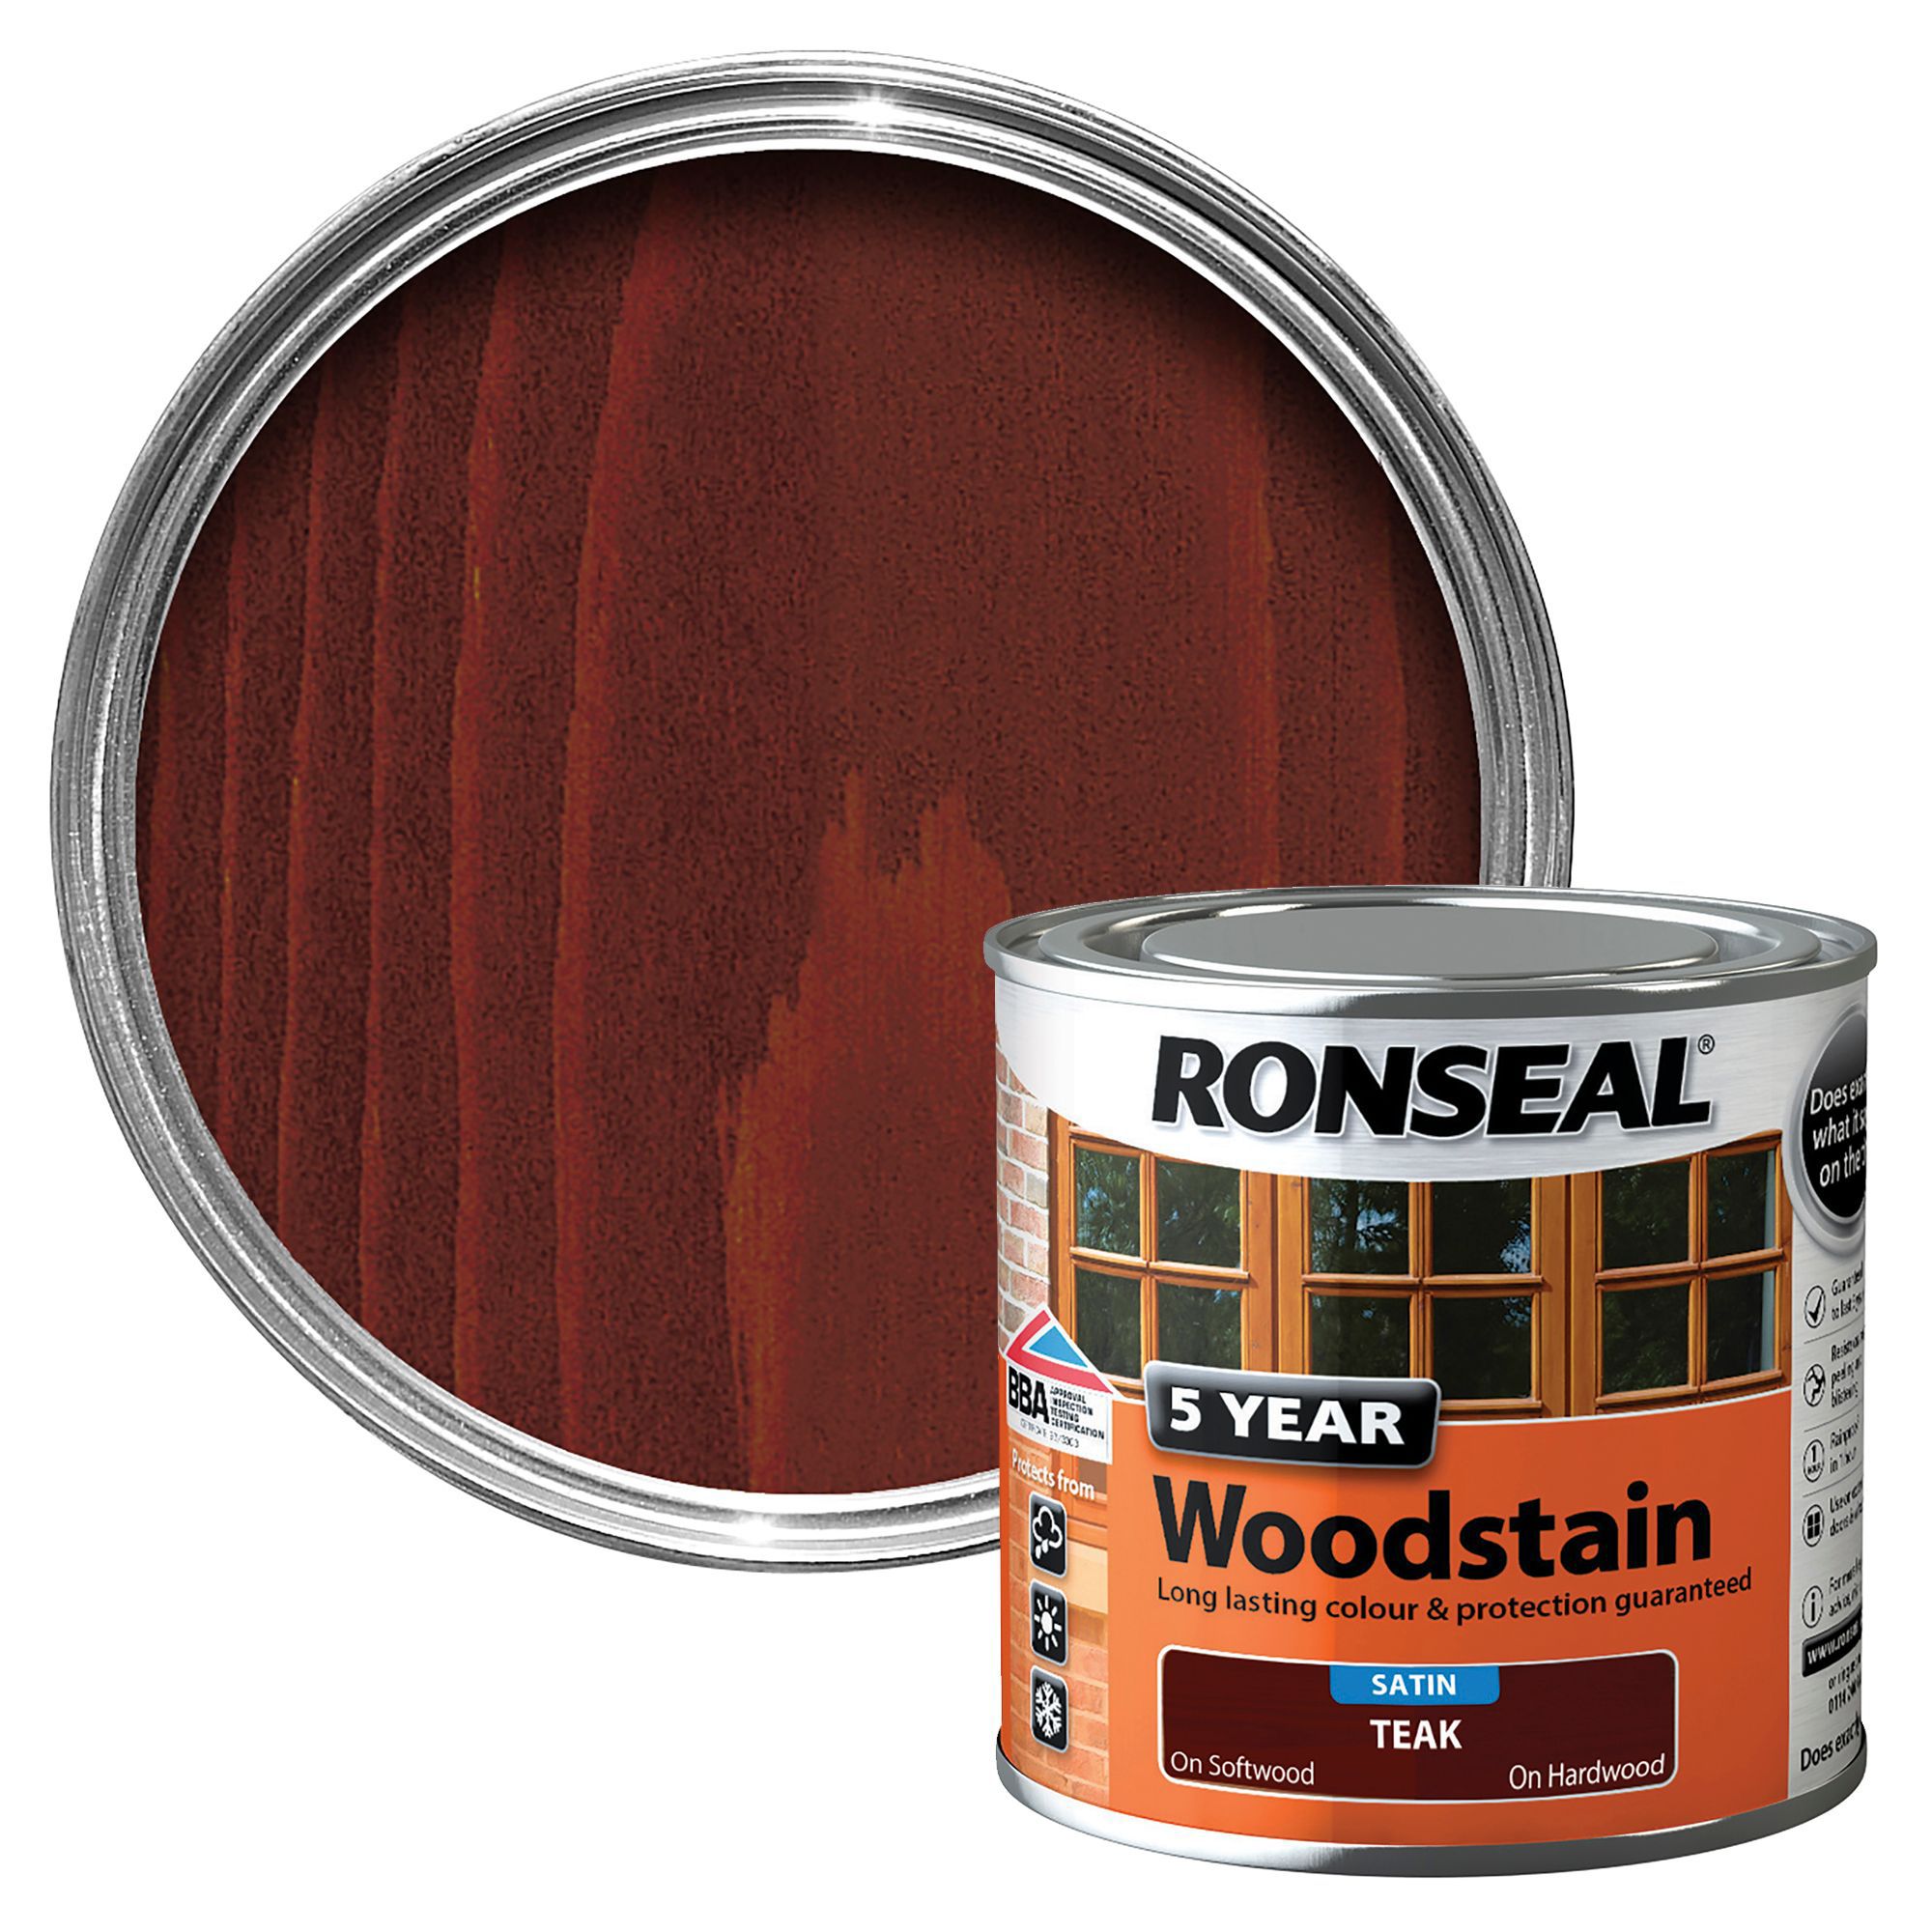 Ronseal Teak High satin sheen Wood stain, 250